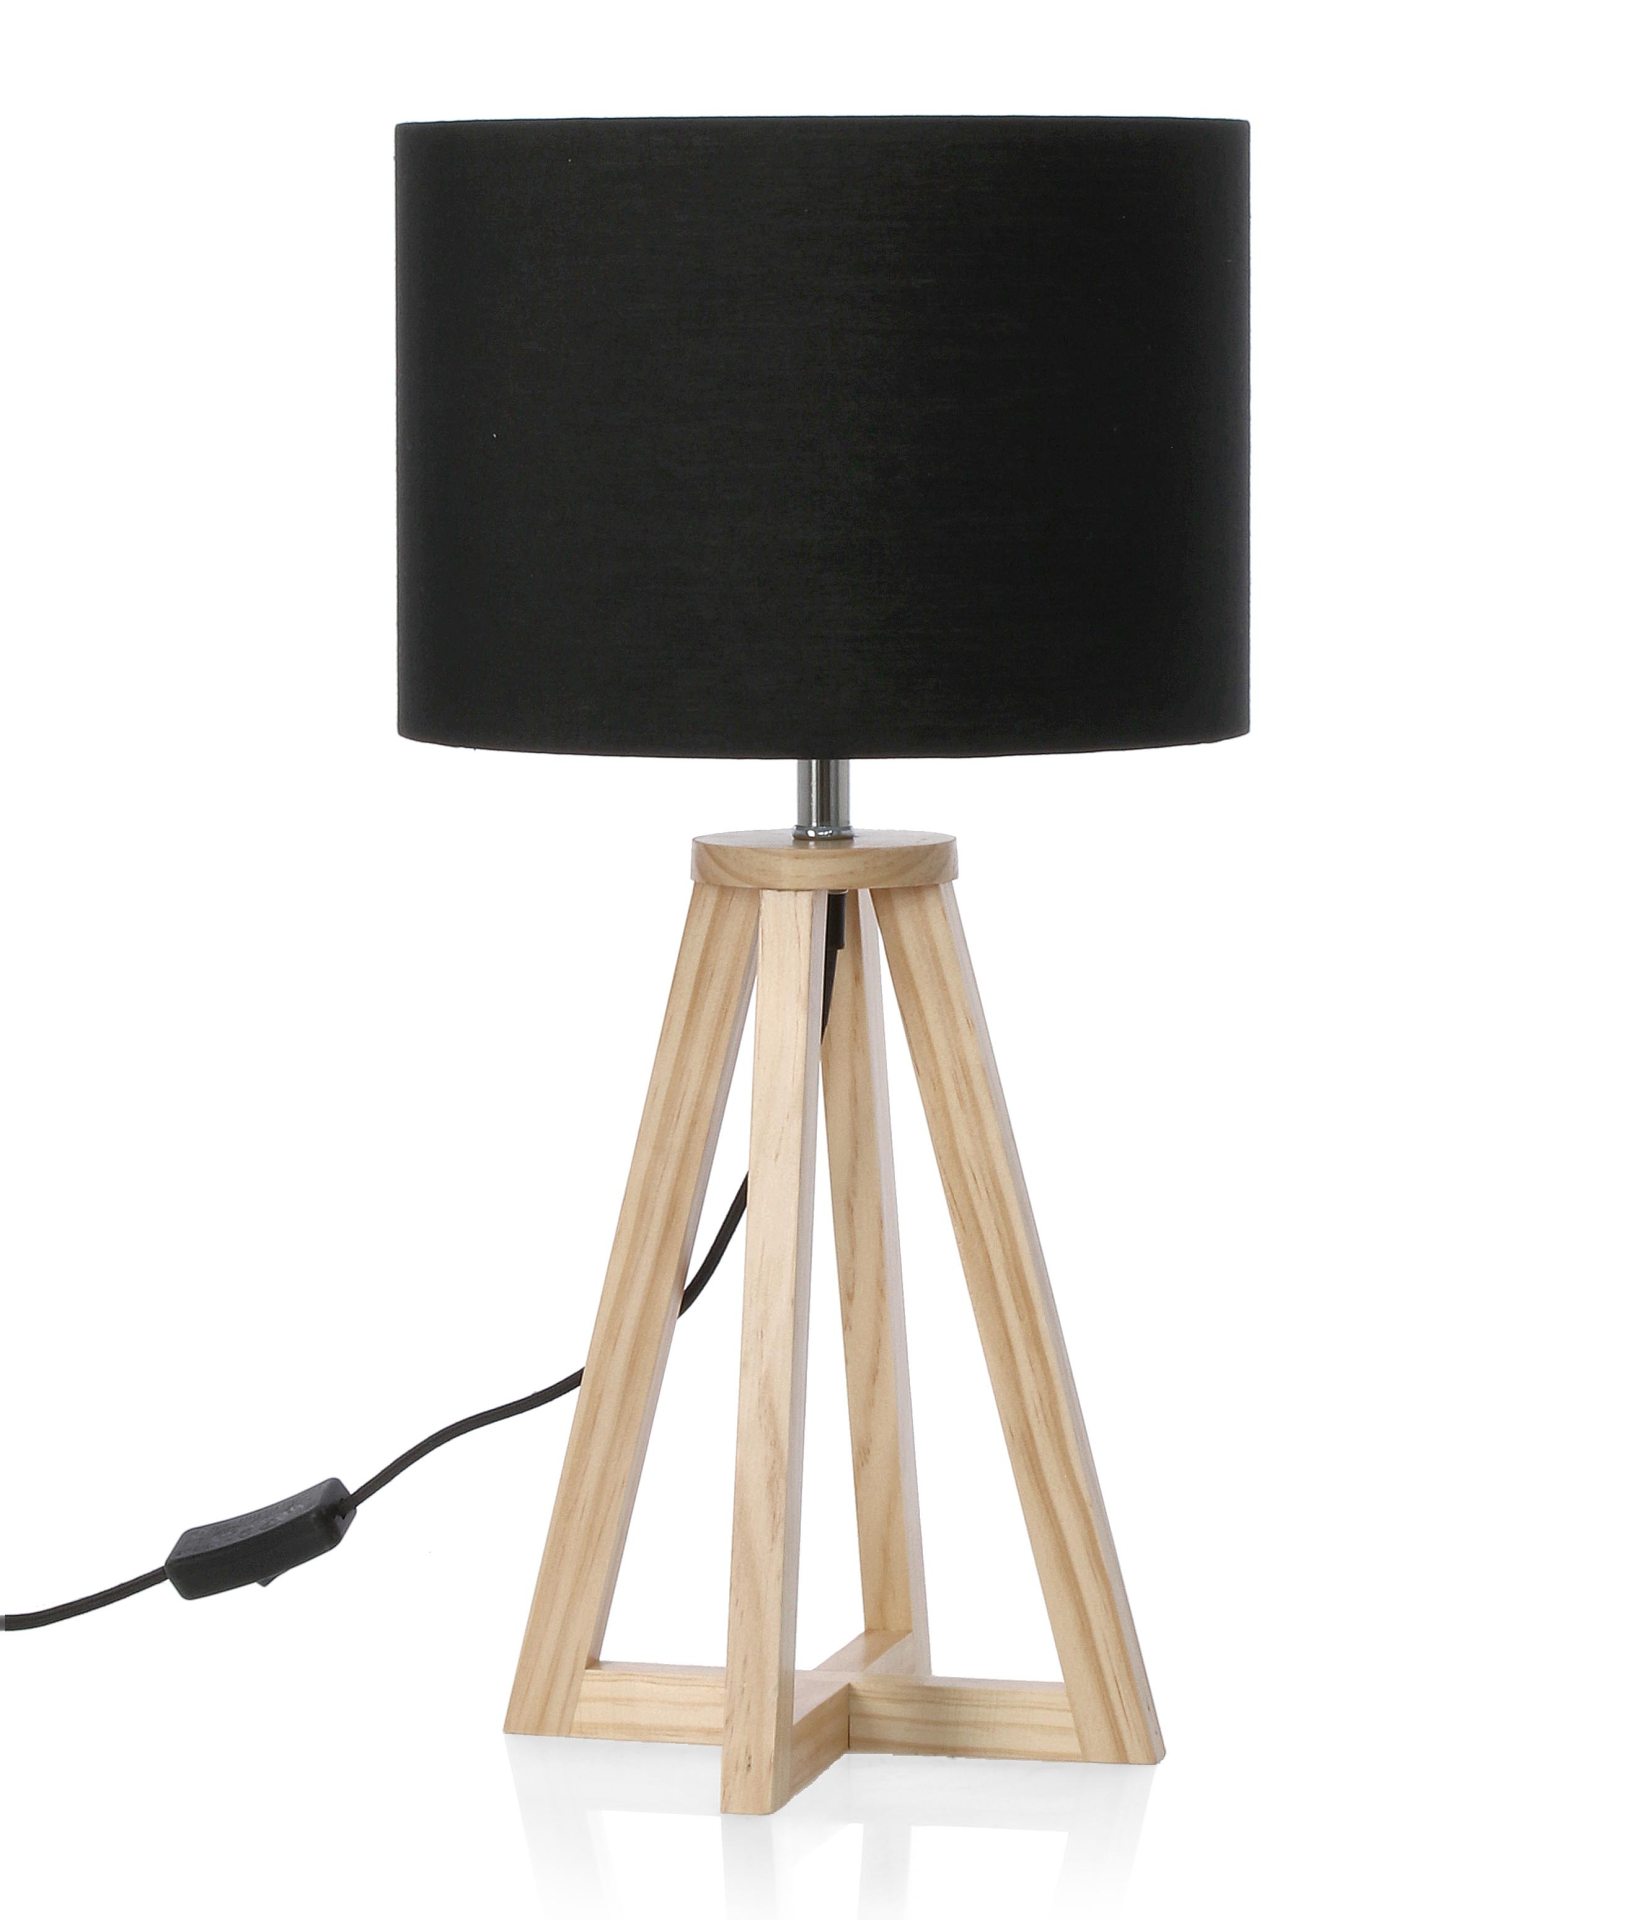 Die Tischleuchte Stoccolma überzeugt mit ihrem klassischen Design. Gefertigt wurde sie aus Kiefernholz, welches einen natürlichen Farbton besitzt. Der Lampenschirm ist aus Terilene und hat eine schwarze Farbe. Die Lampe besitzt eine Höhe von 48,5 cm.